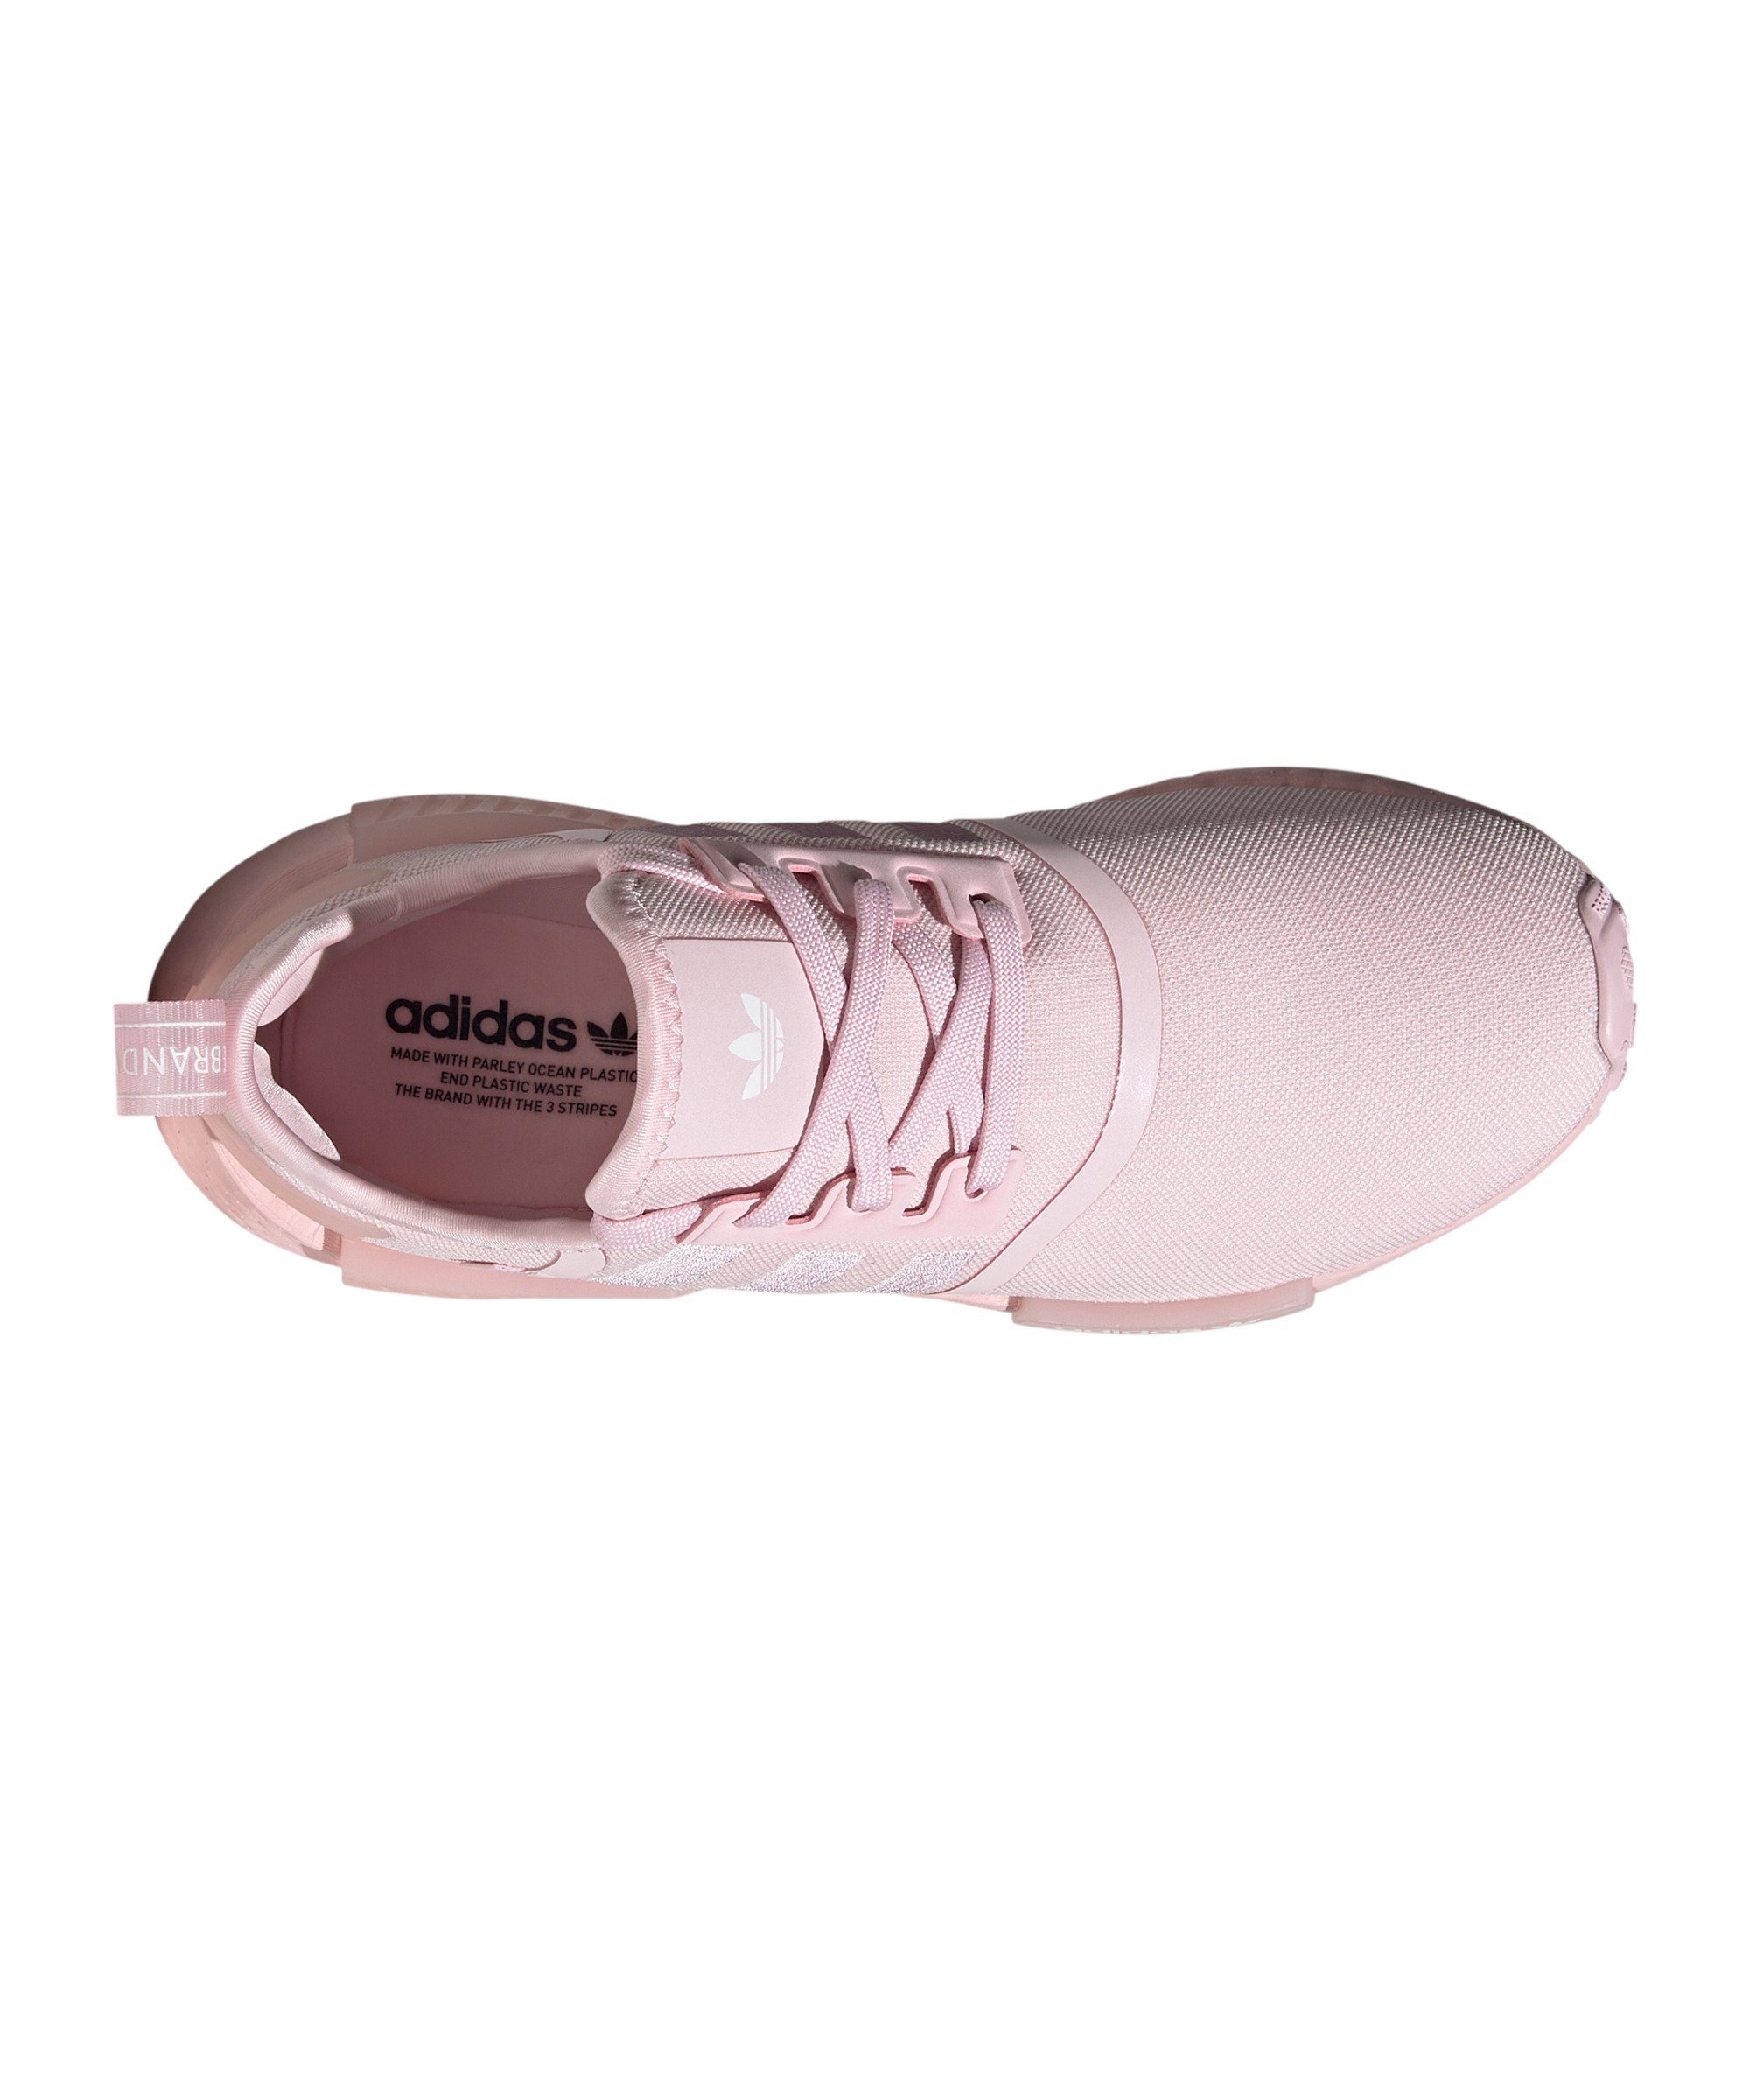 adidas Originals NMD_R1 Damen Sneaker pinkweiss